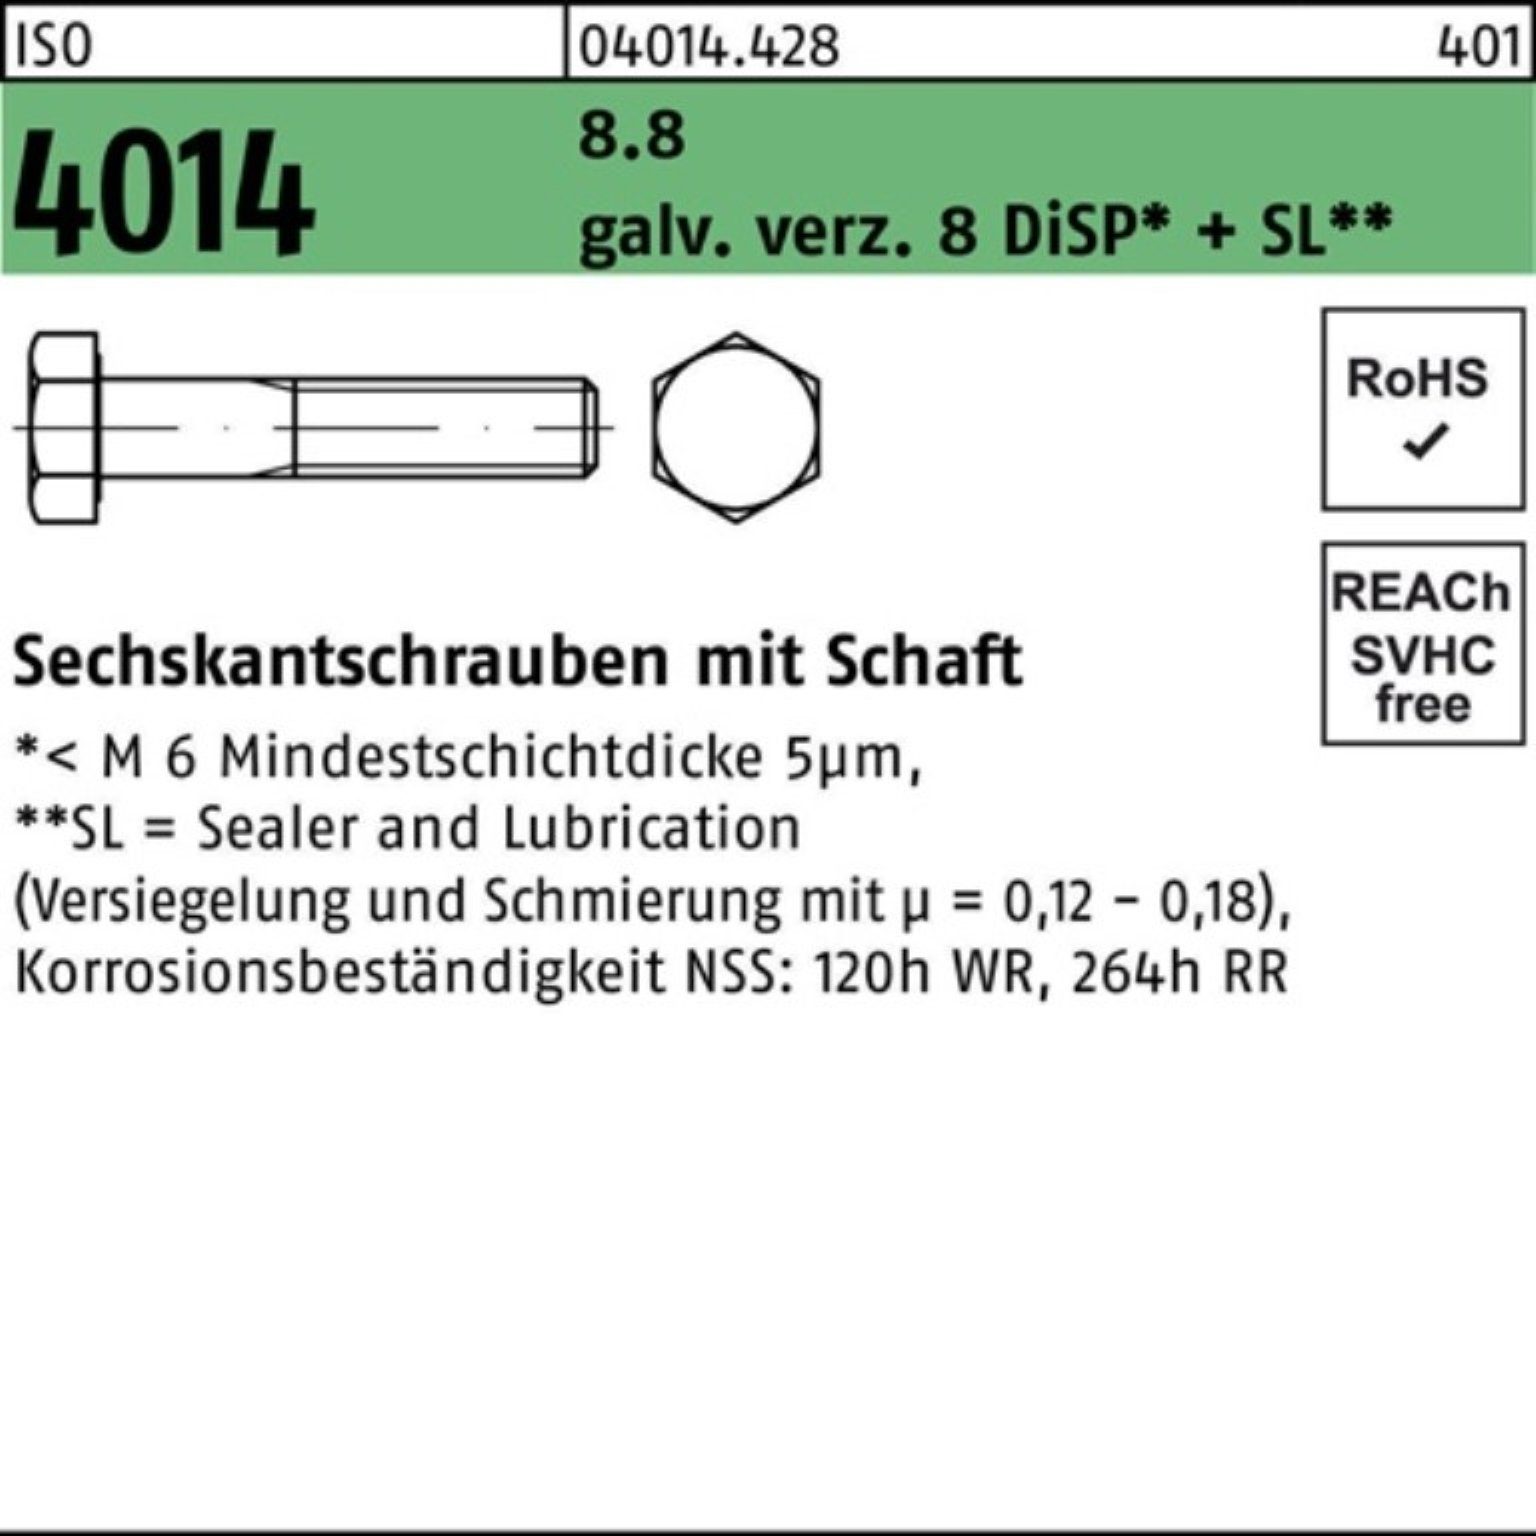 Bufab Sechskantschraube 100er Pack galv.verz. Schaft 8 Sechskantschraube 4014 8.8 D M8x115 ISO